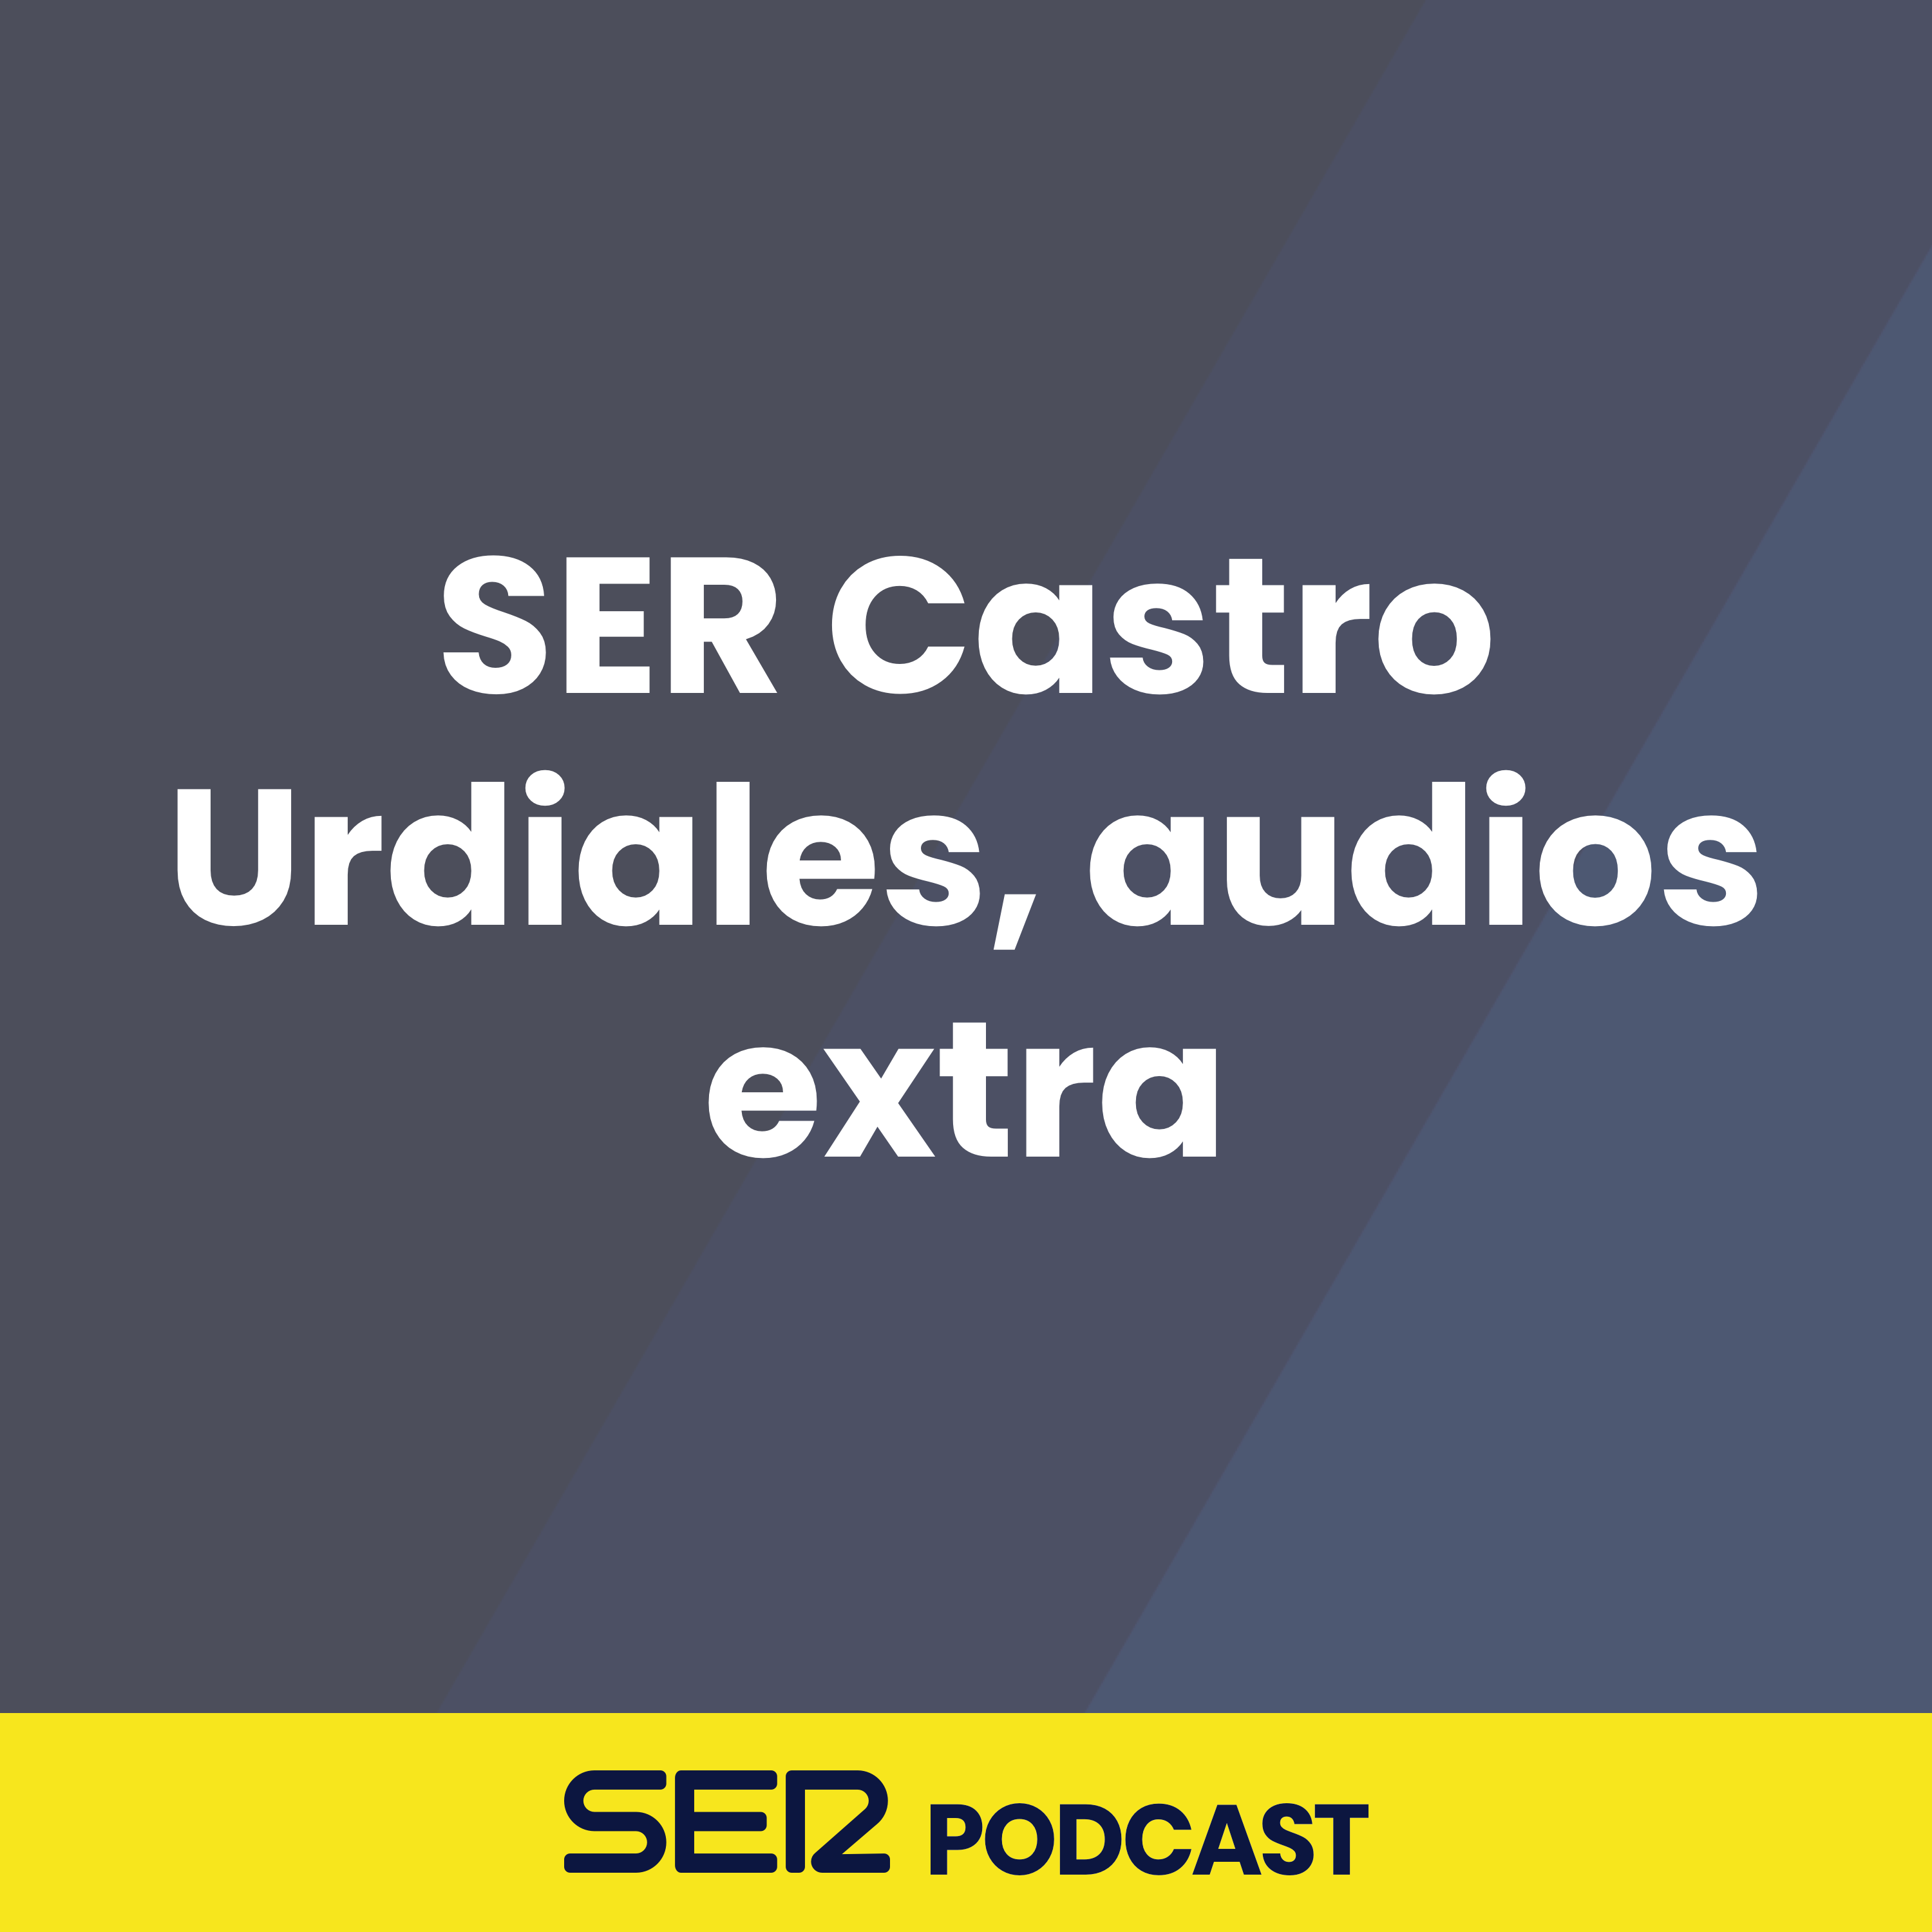 SER Castro Urdiales, audios extra